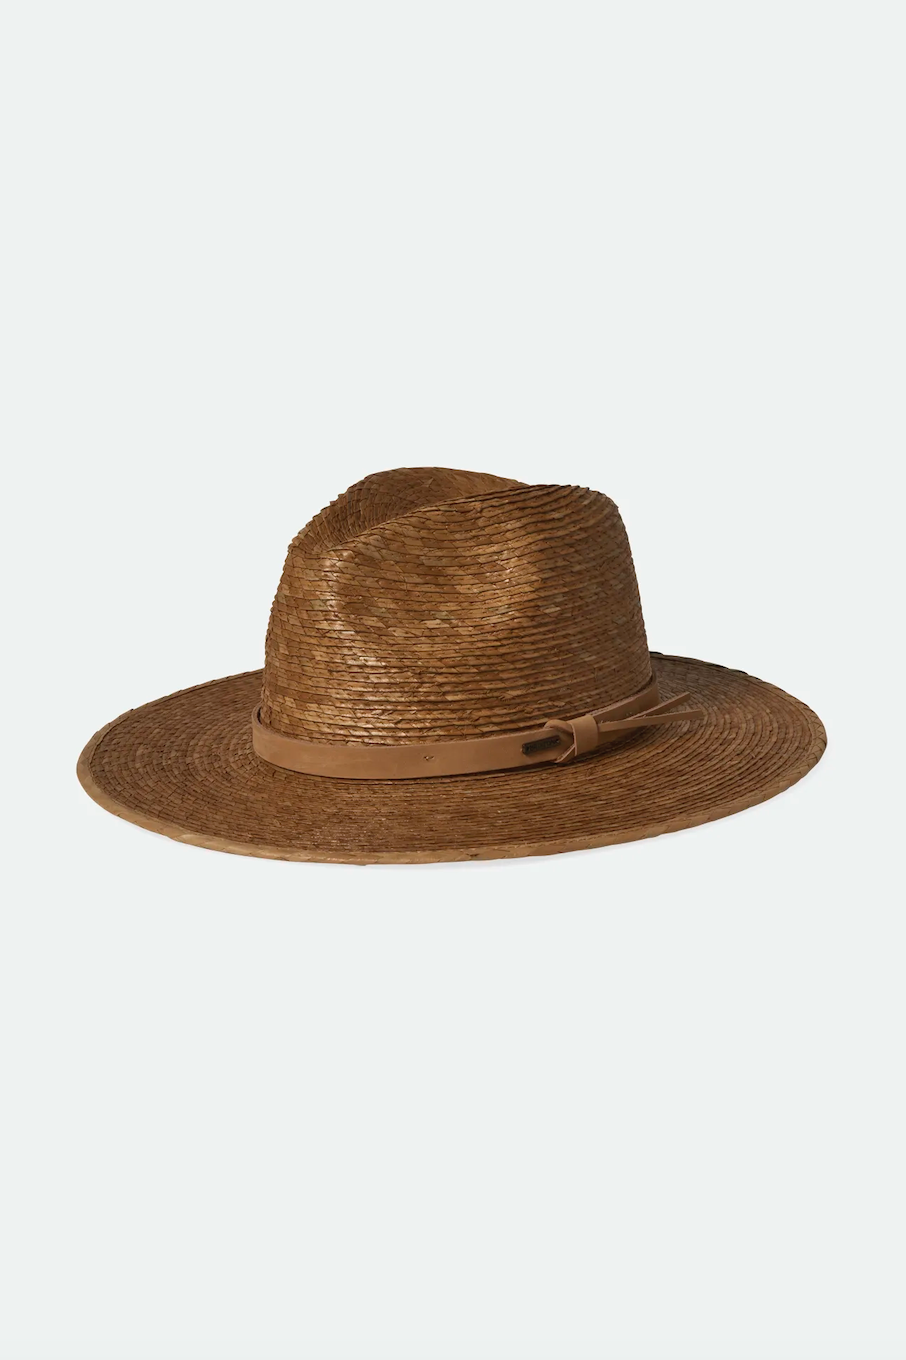 Field Proper Straw Hat | Tan/Tan